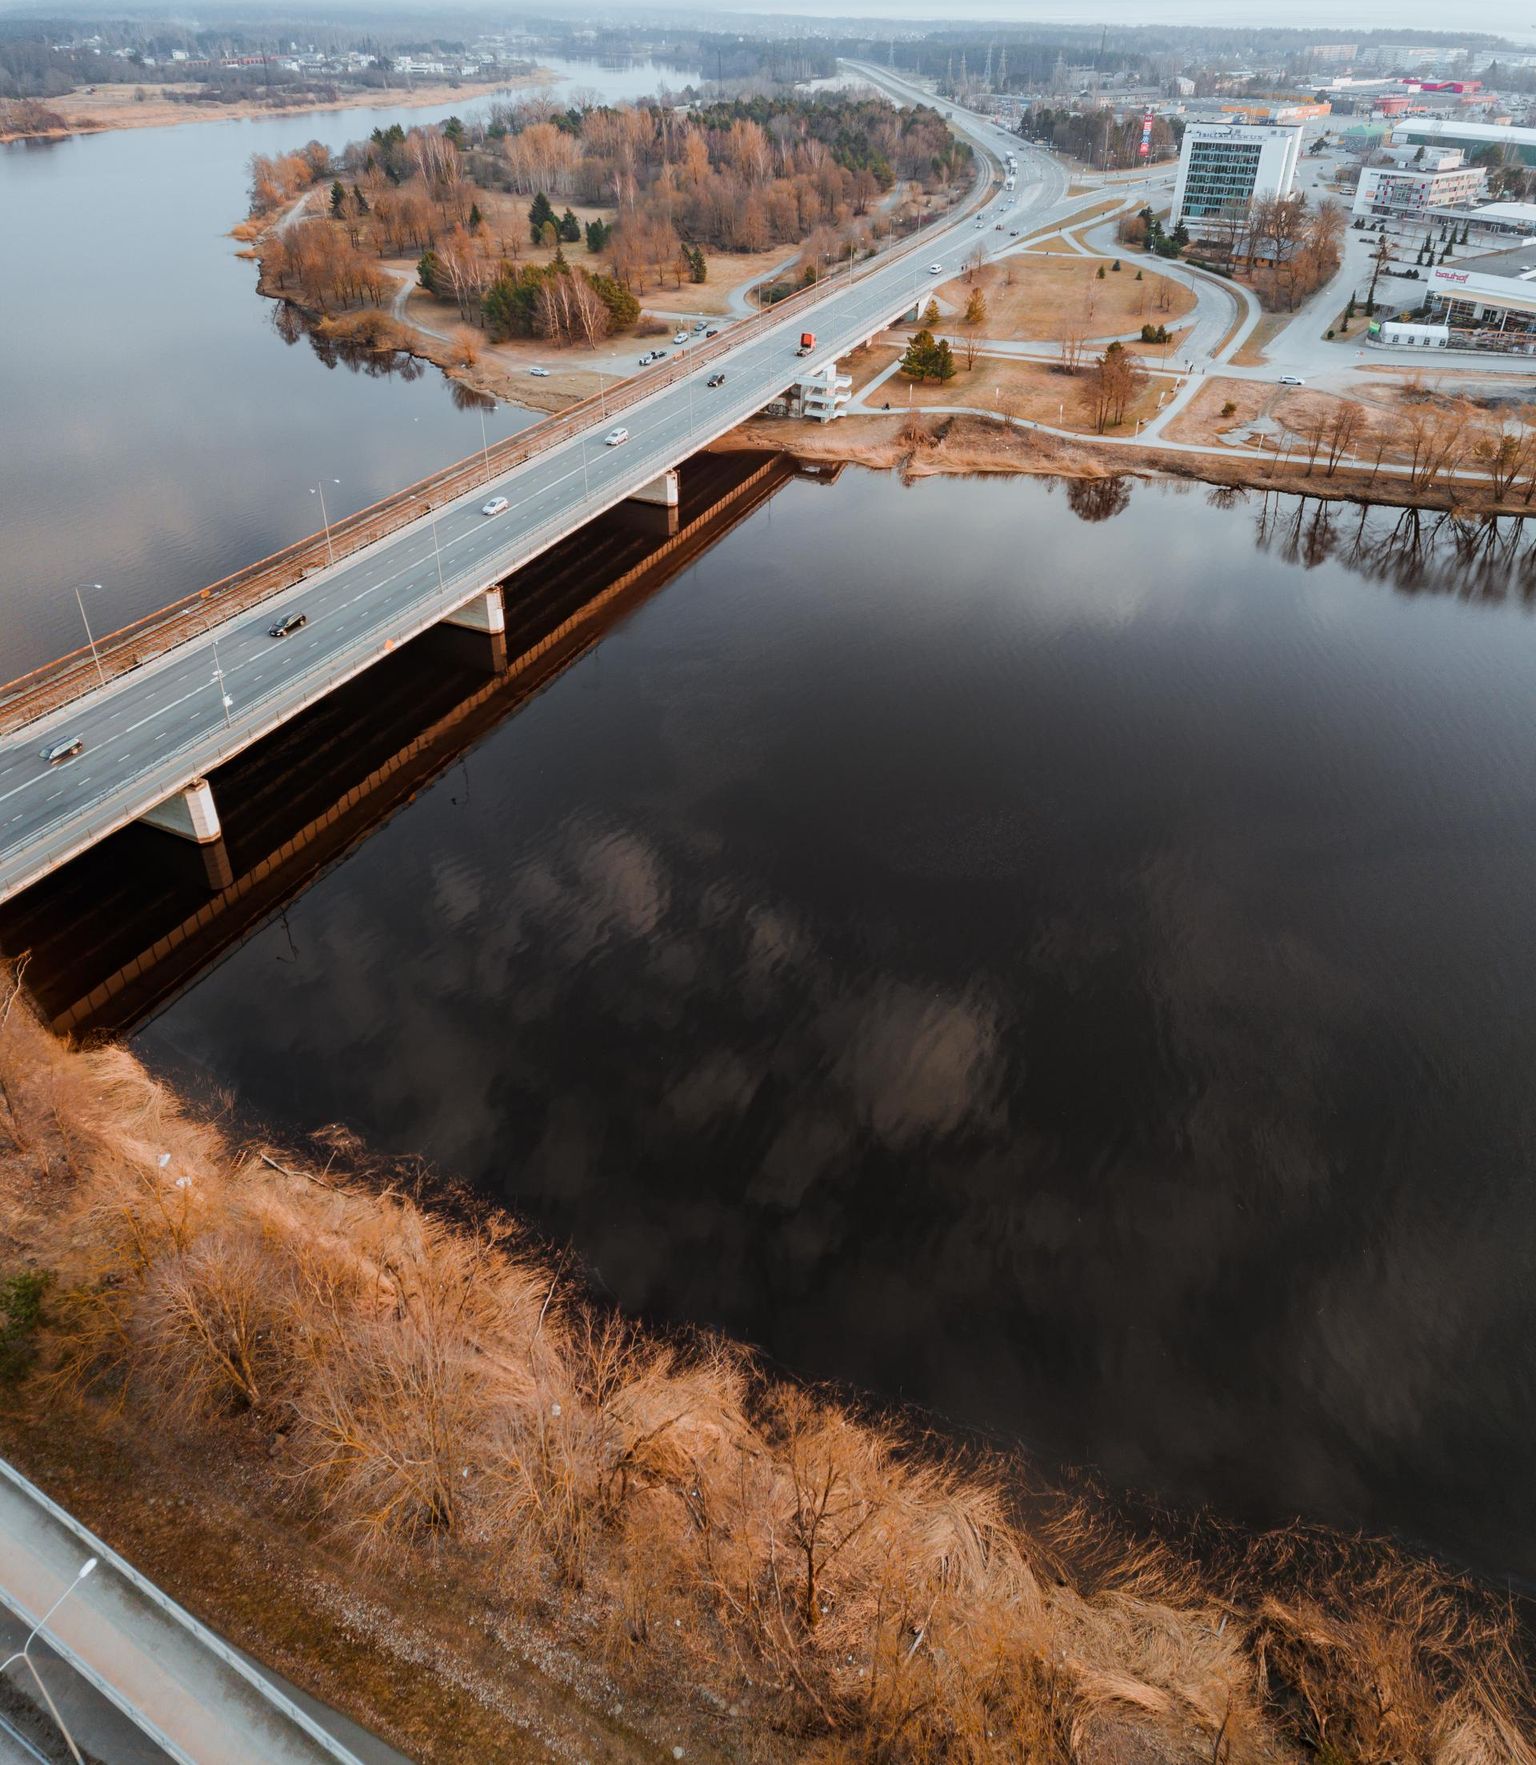 Viimati ehitati Pärnusse sild üle Papiniidu jõekääru 1976. aastal.